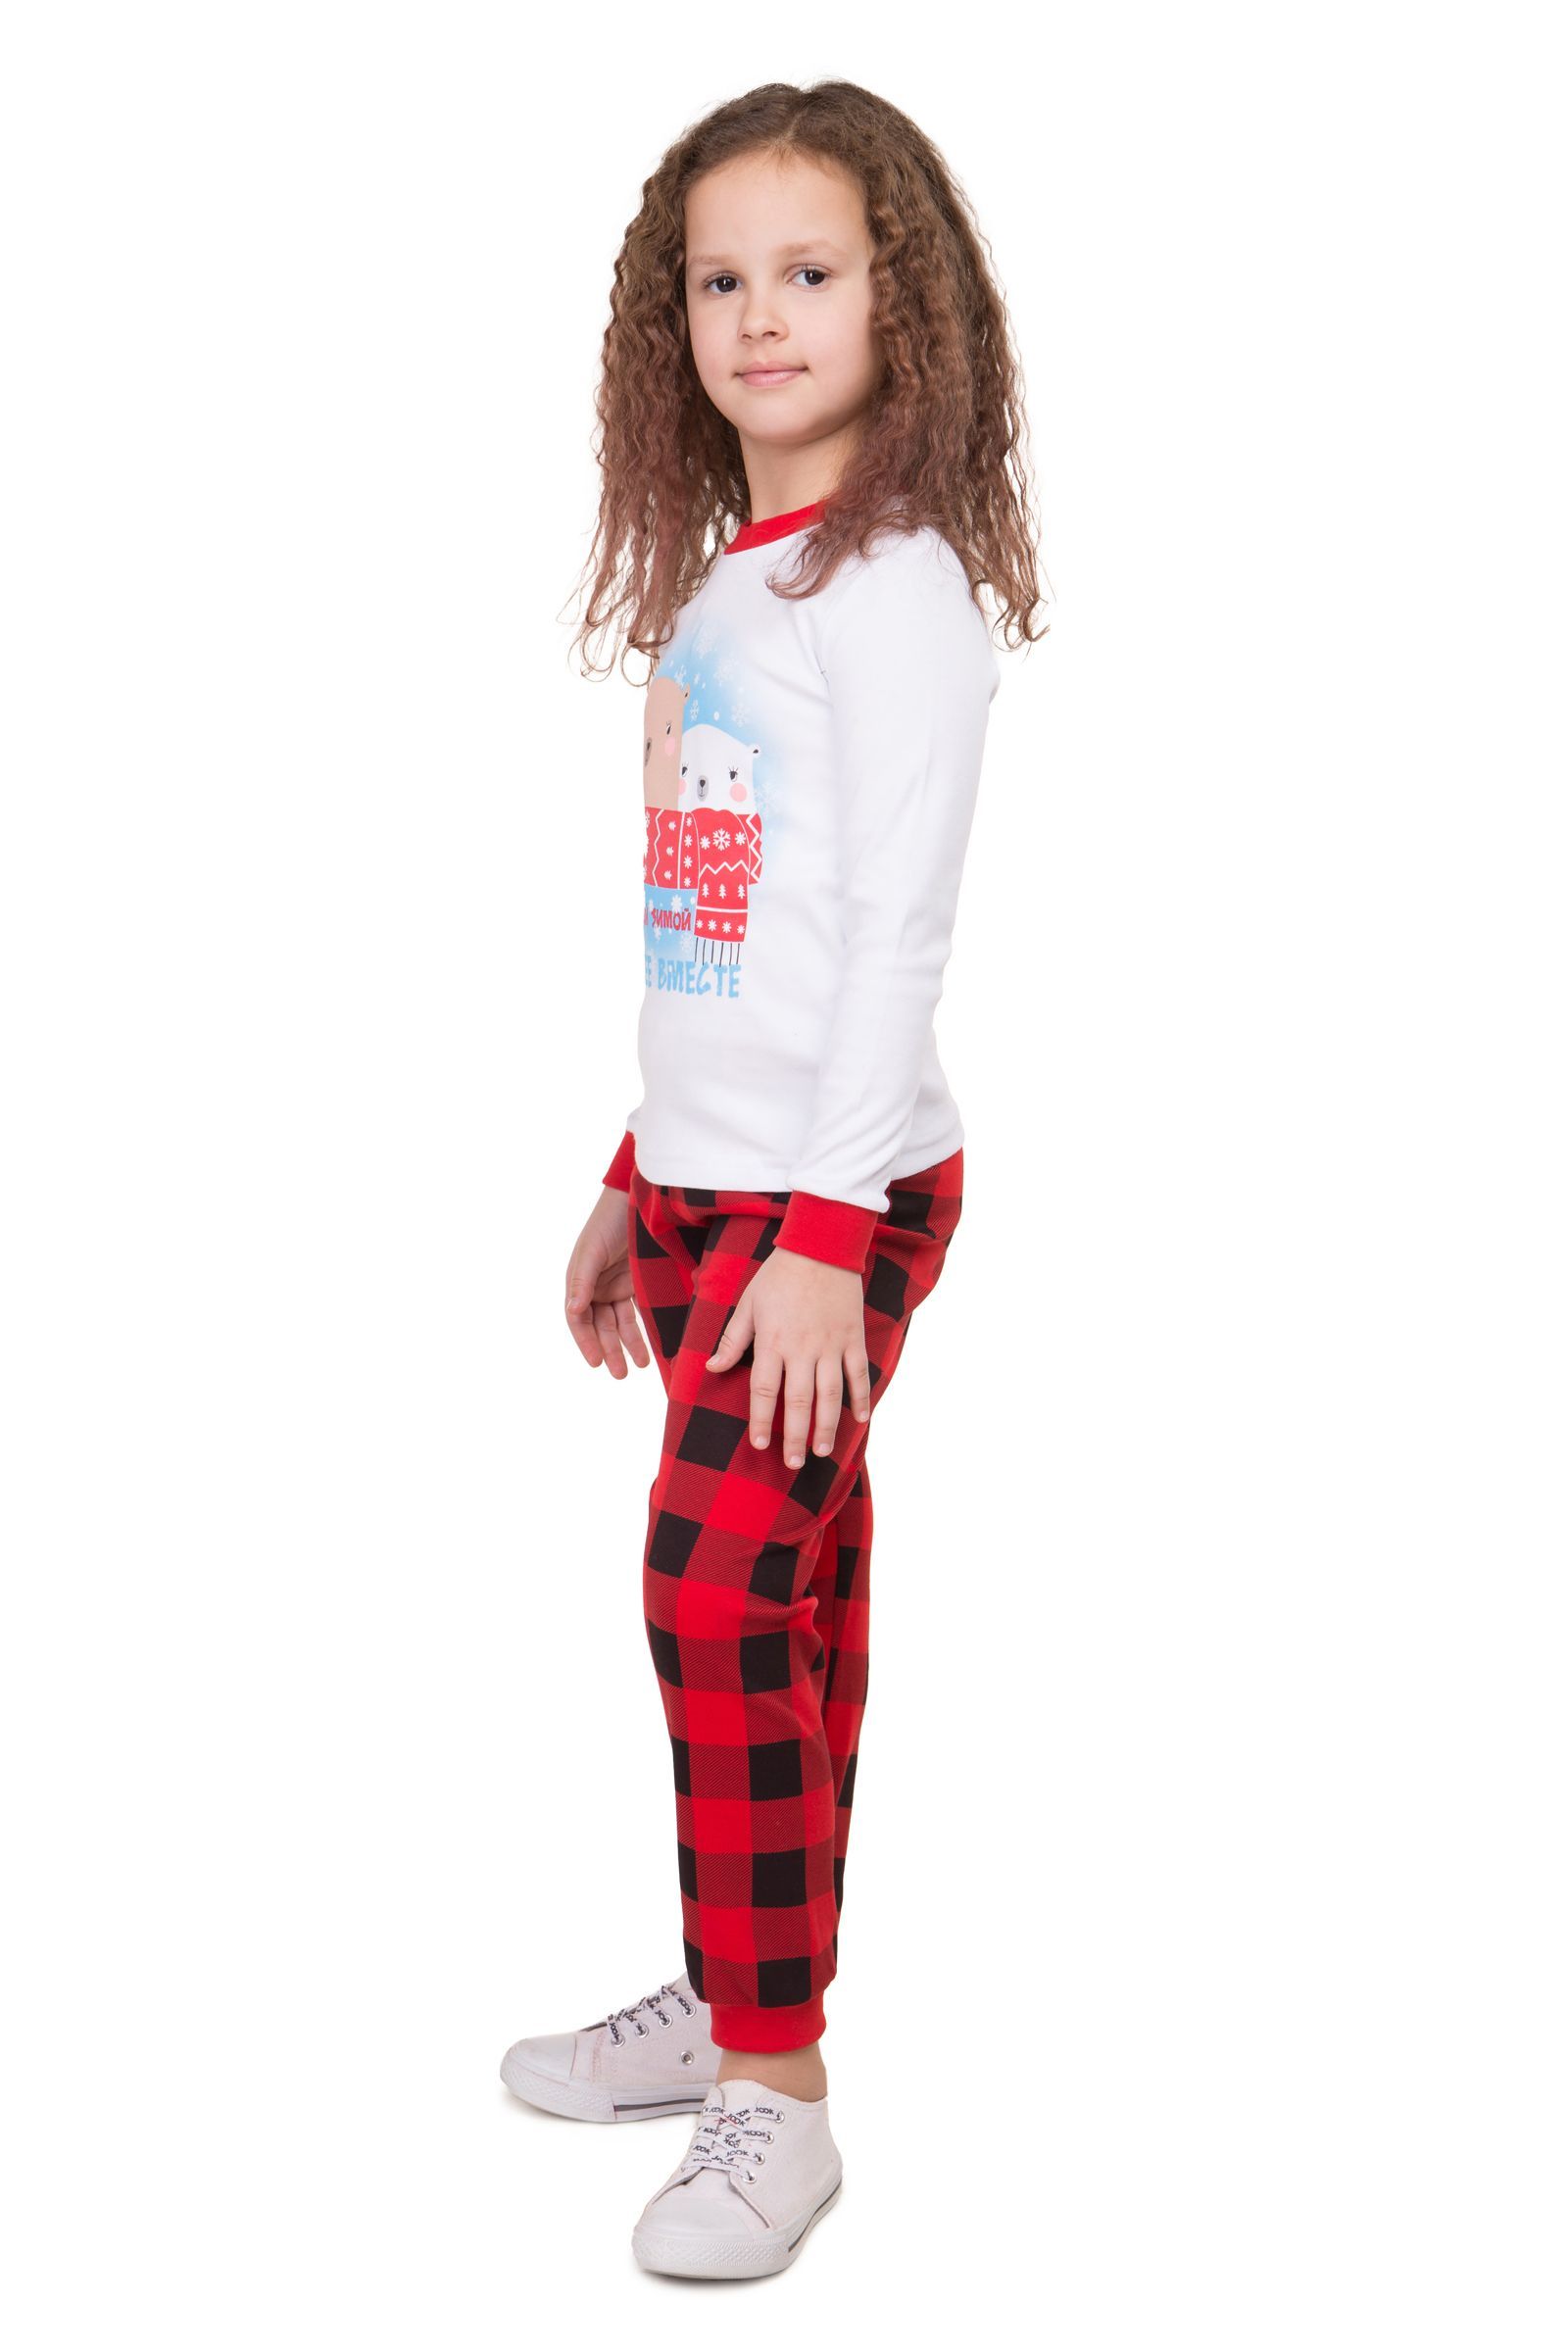 Пижама-ПЖ01-3695 оптом от производителя детской одежды 'Алёна'